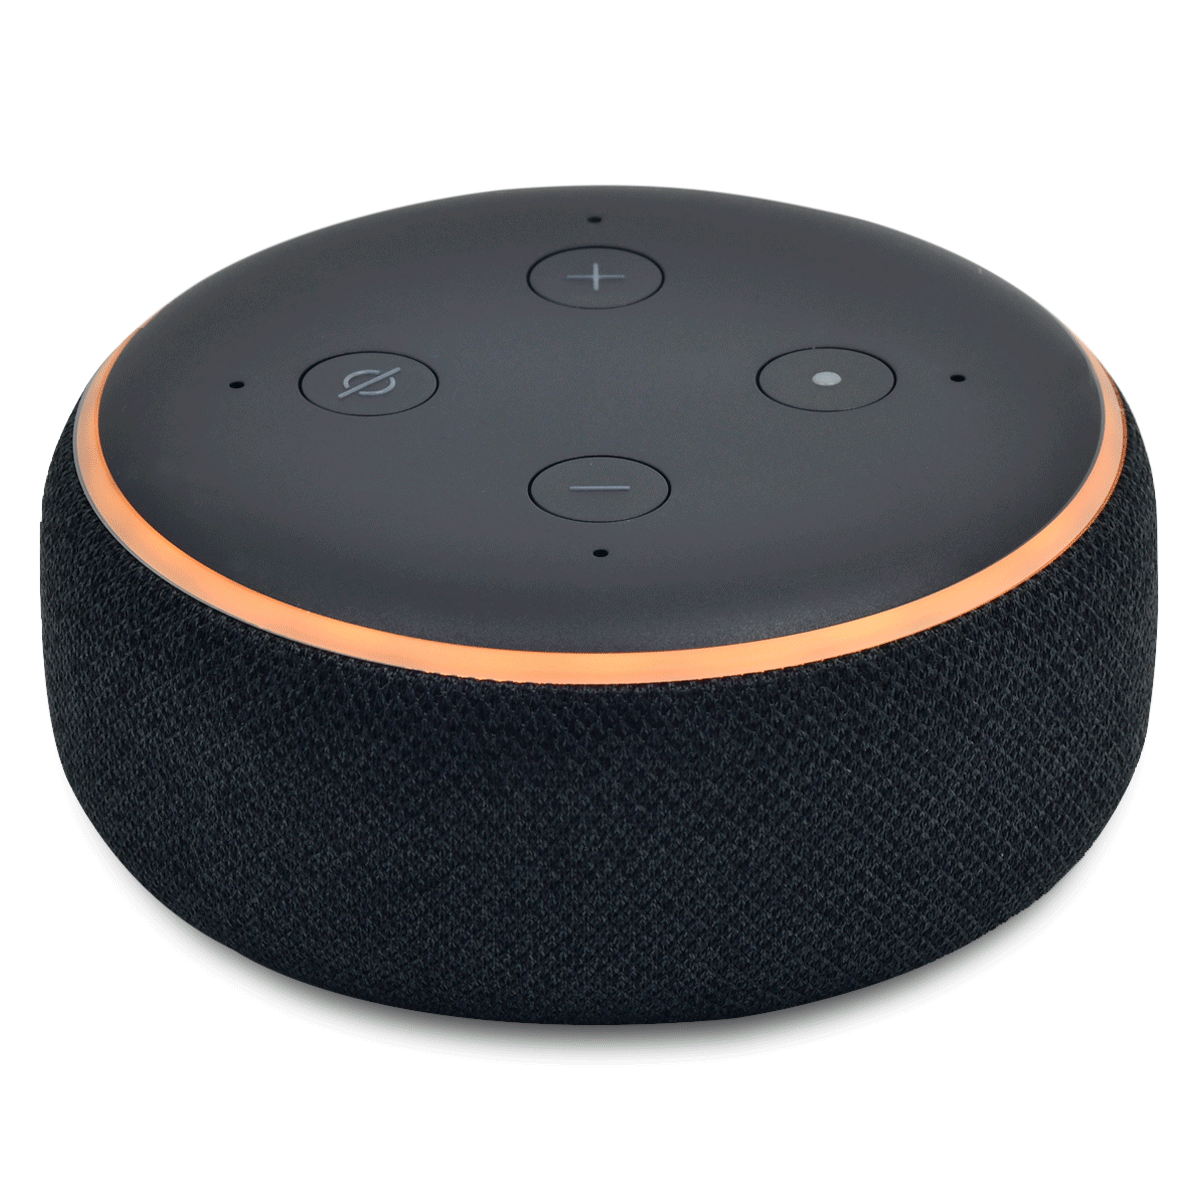 Comprá Speaker  Echo Dot 3ra Generacion - Envios a todo el